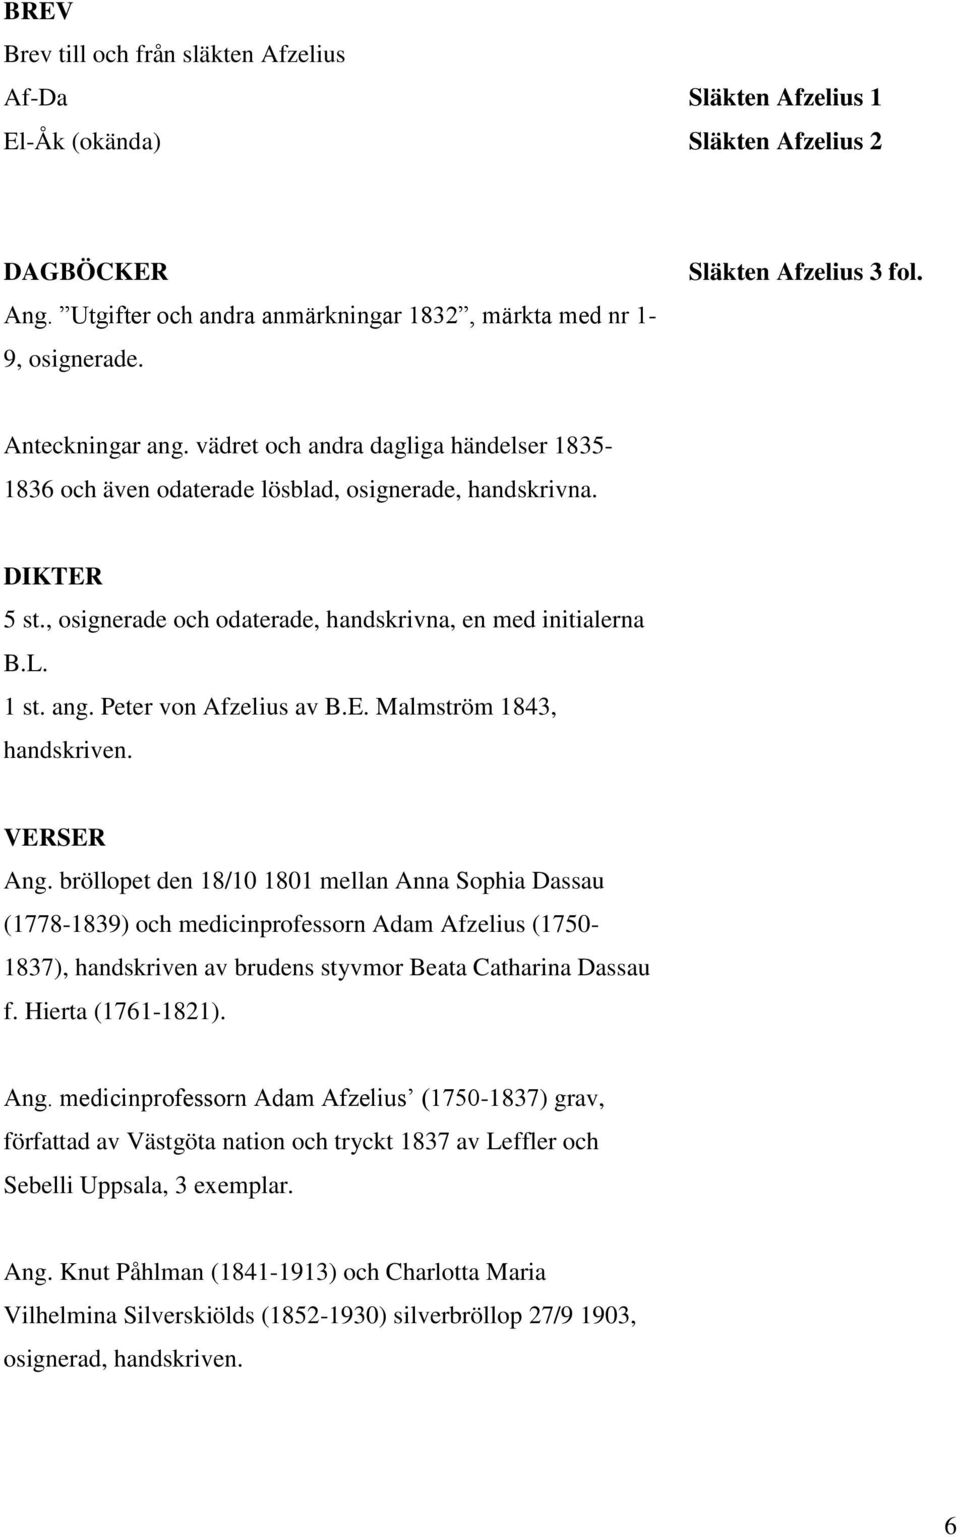 , osignerade och odaterade, handskrivna, en med initialerna B.L. 1 st. ang. Peter von Afzelius av B.E. Malmström 1843, handskriven. VERSER Ang.